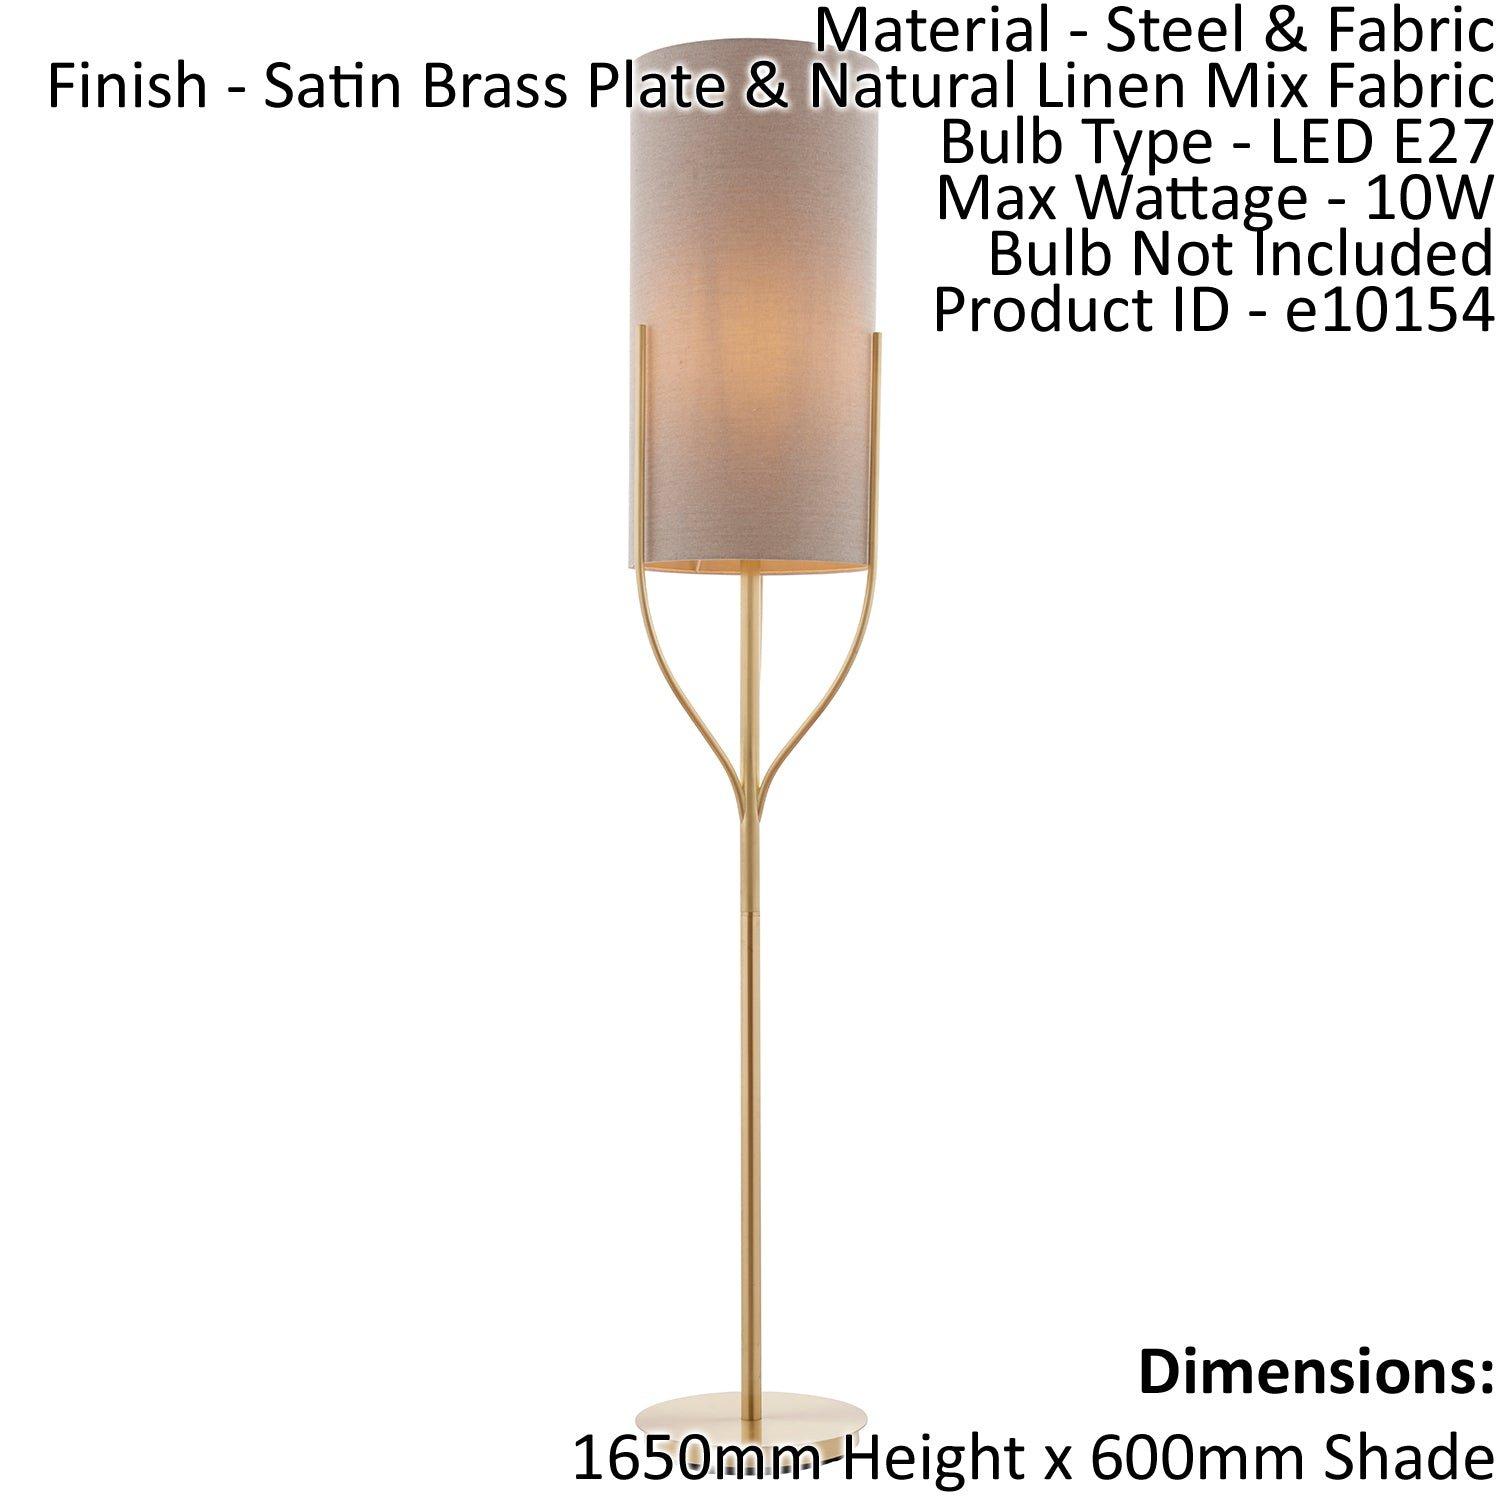 Floor Lamp Light Satin Brass & Natural Linen Mix Fabric 10W LED E27